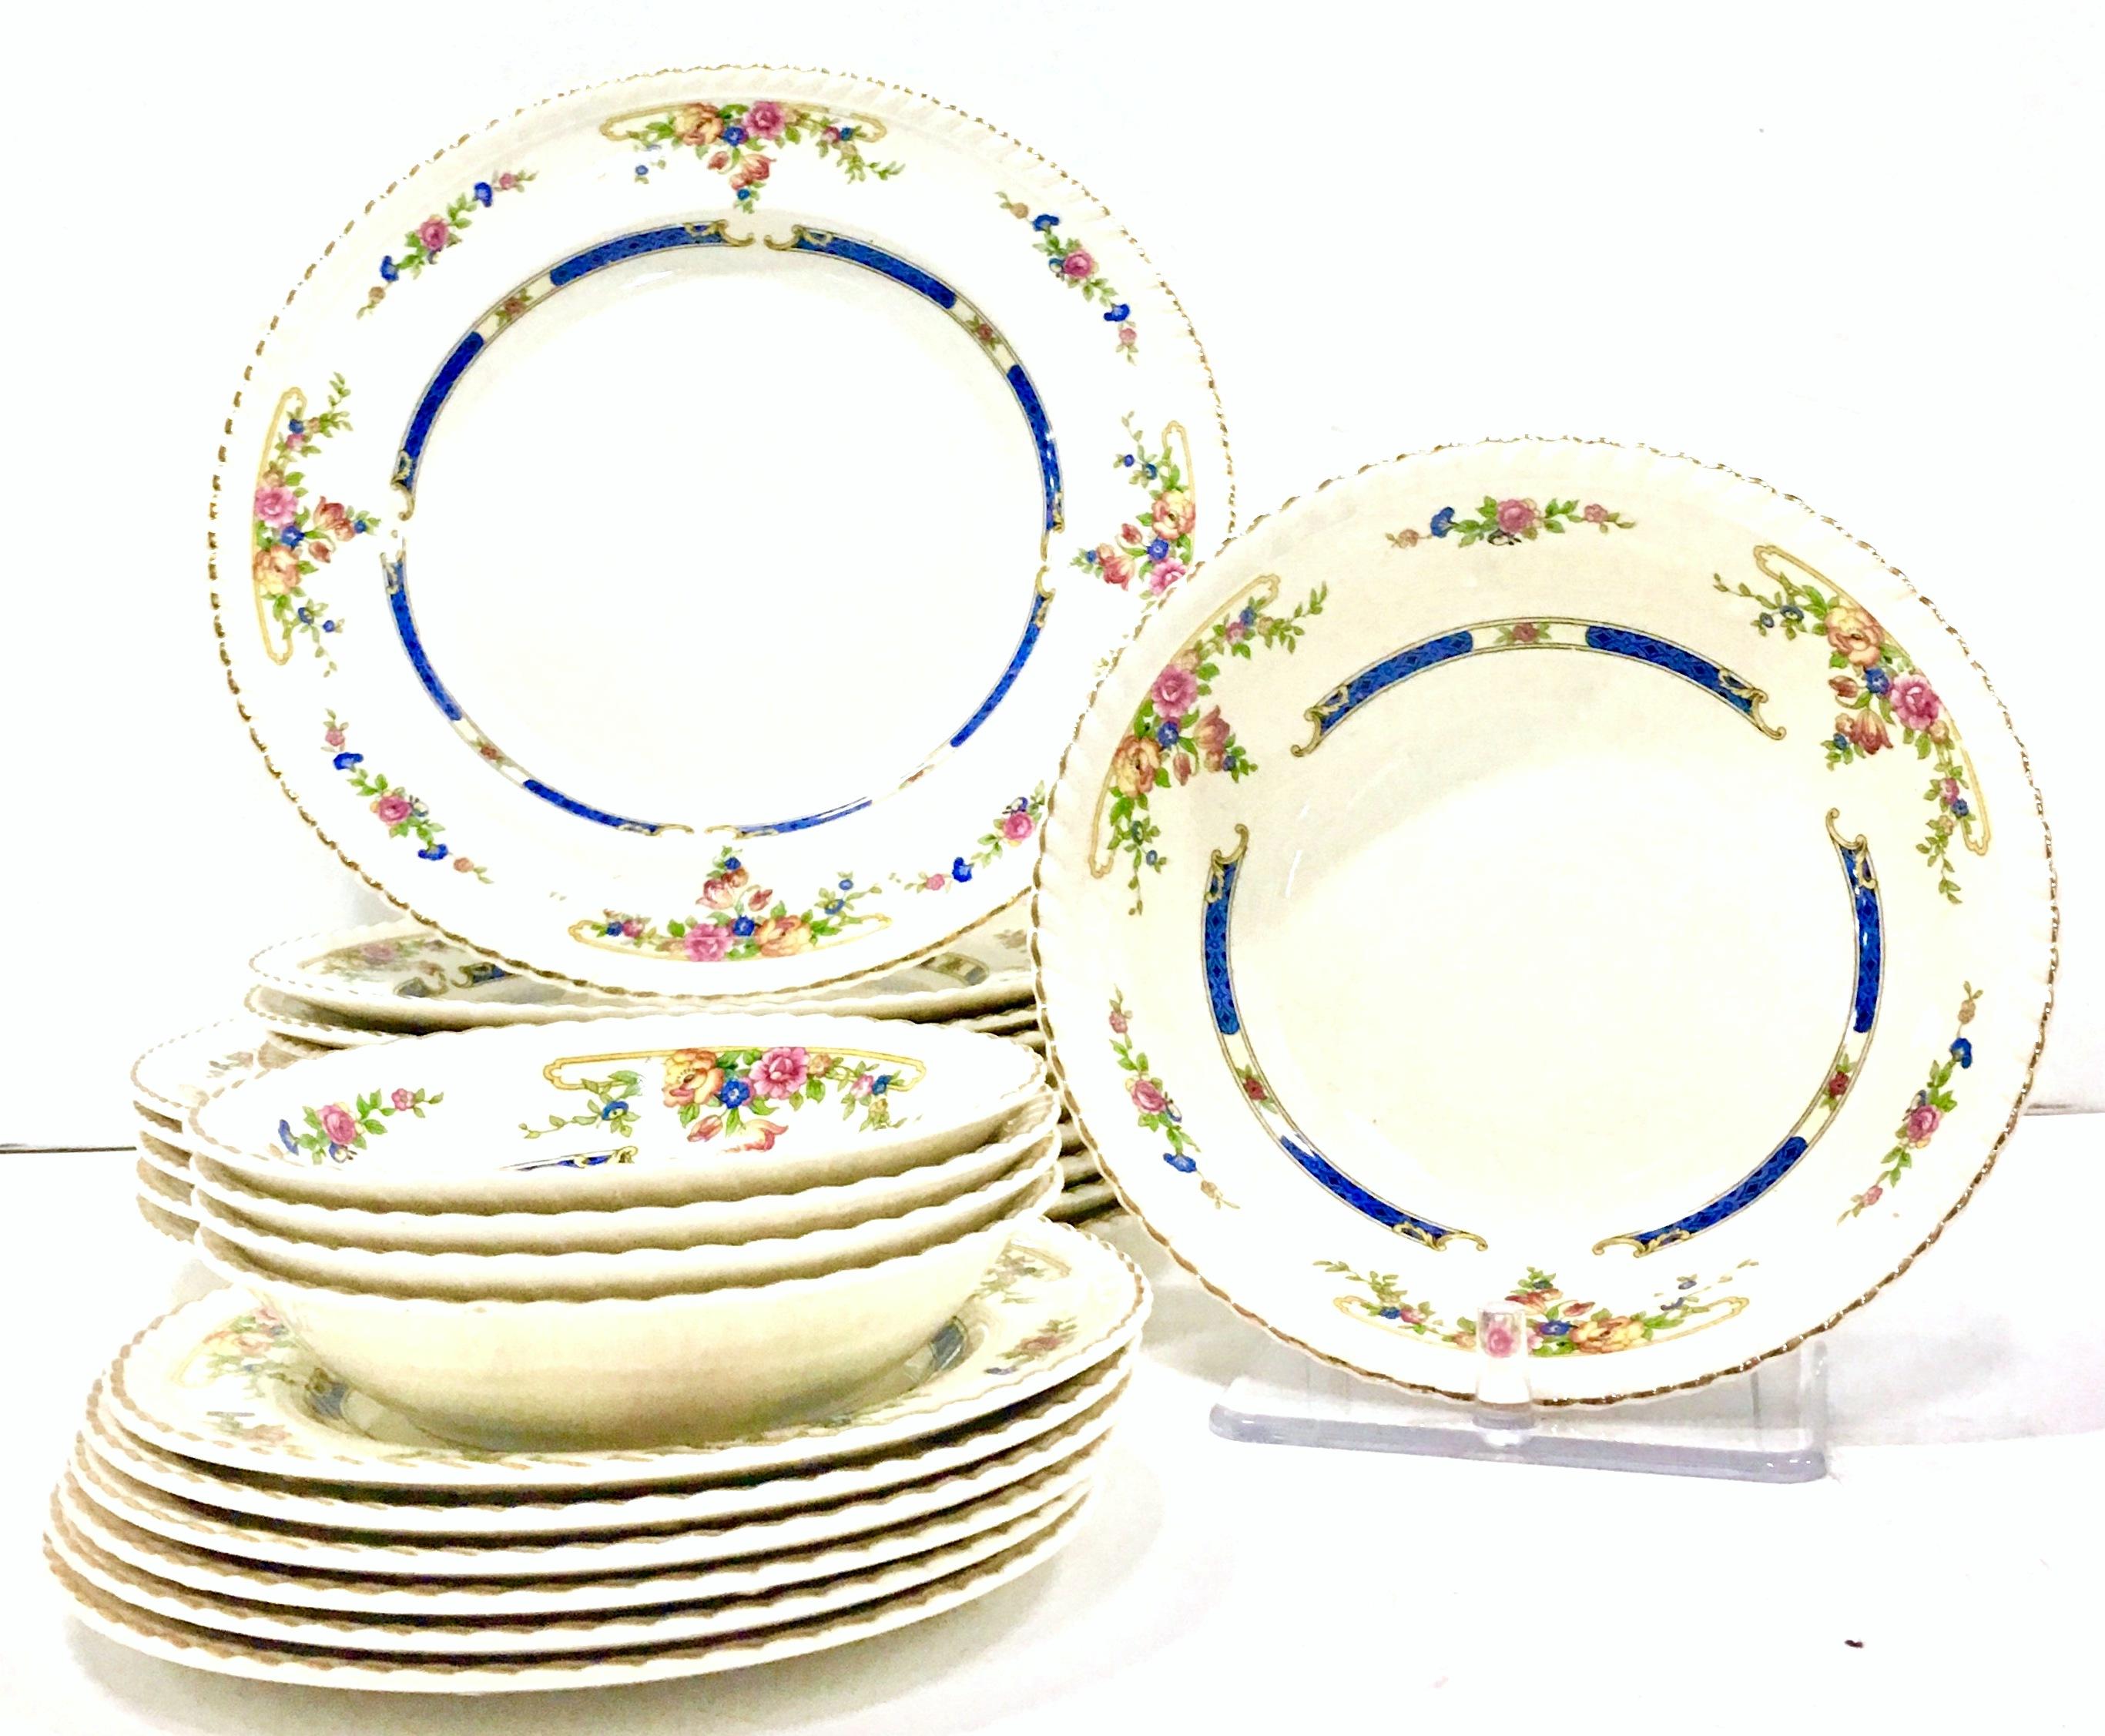 Antique English Art Nouveau floral motif porcelain dinnerware set of 21 pieces in the 